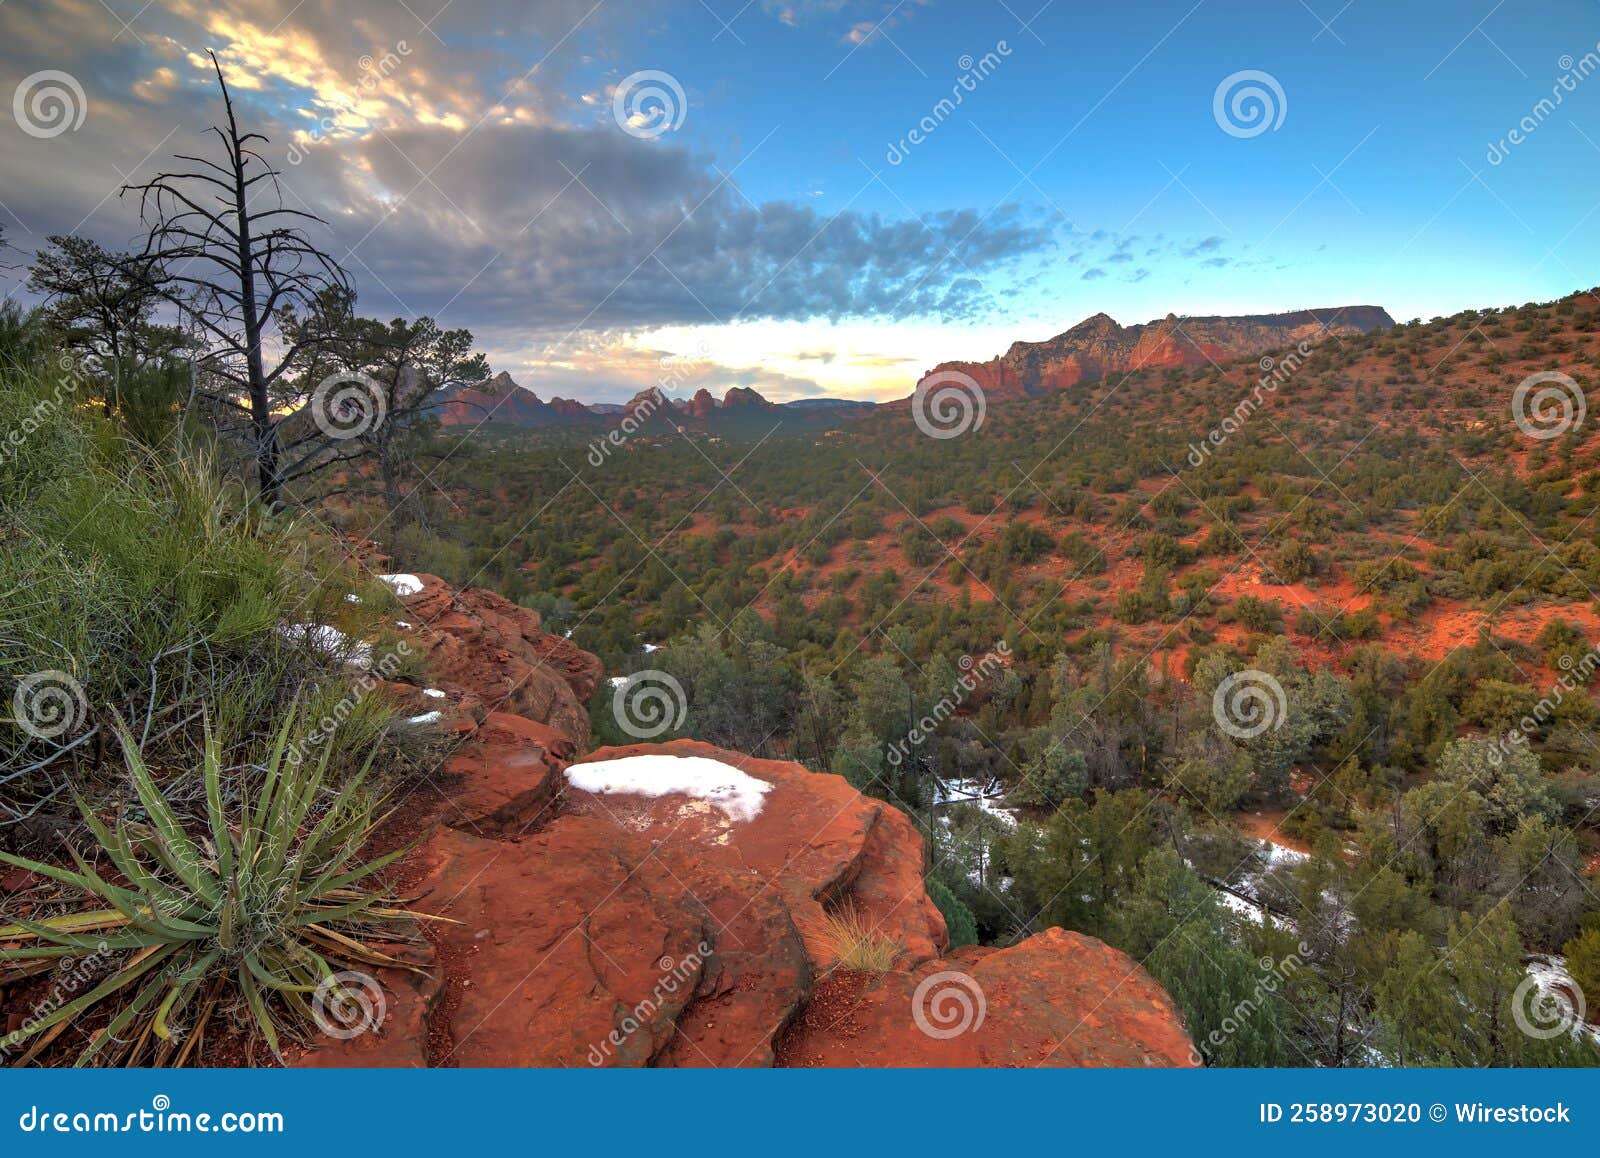 schnebly hill trailhead with its vegetation near sedona, arizona